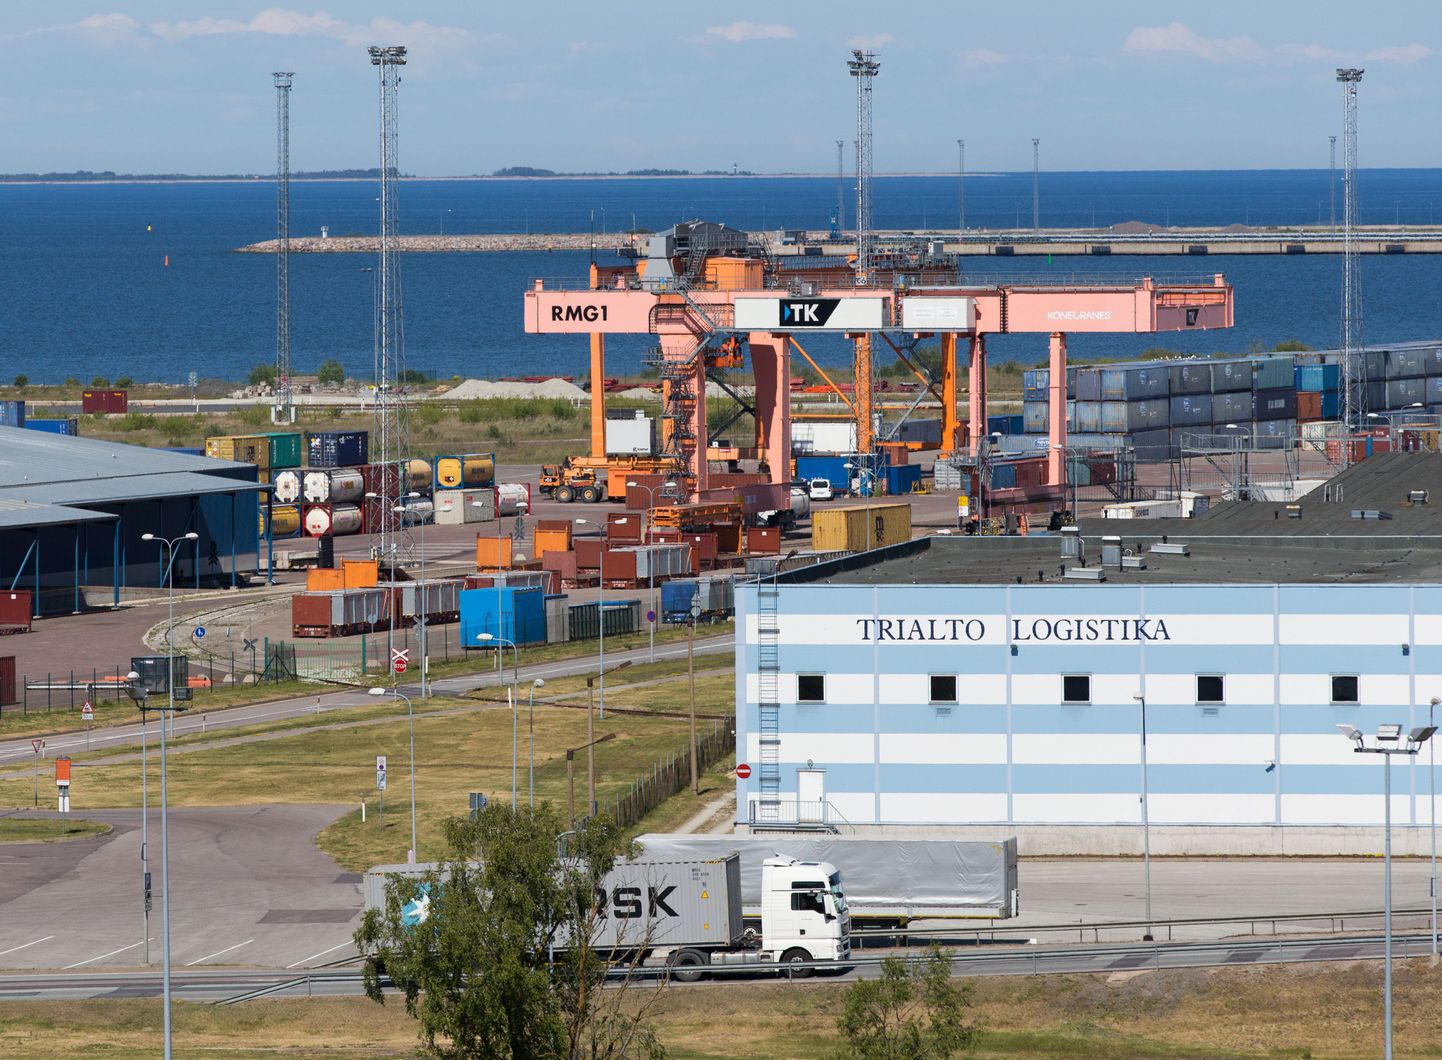 Eesti tõusis Maailmapanga aasta logistika konkurentsivõime indeksi edetabelis ühe koha võrra.